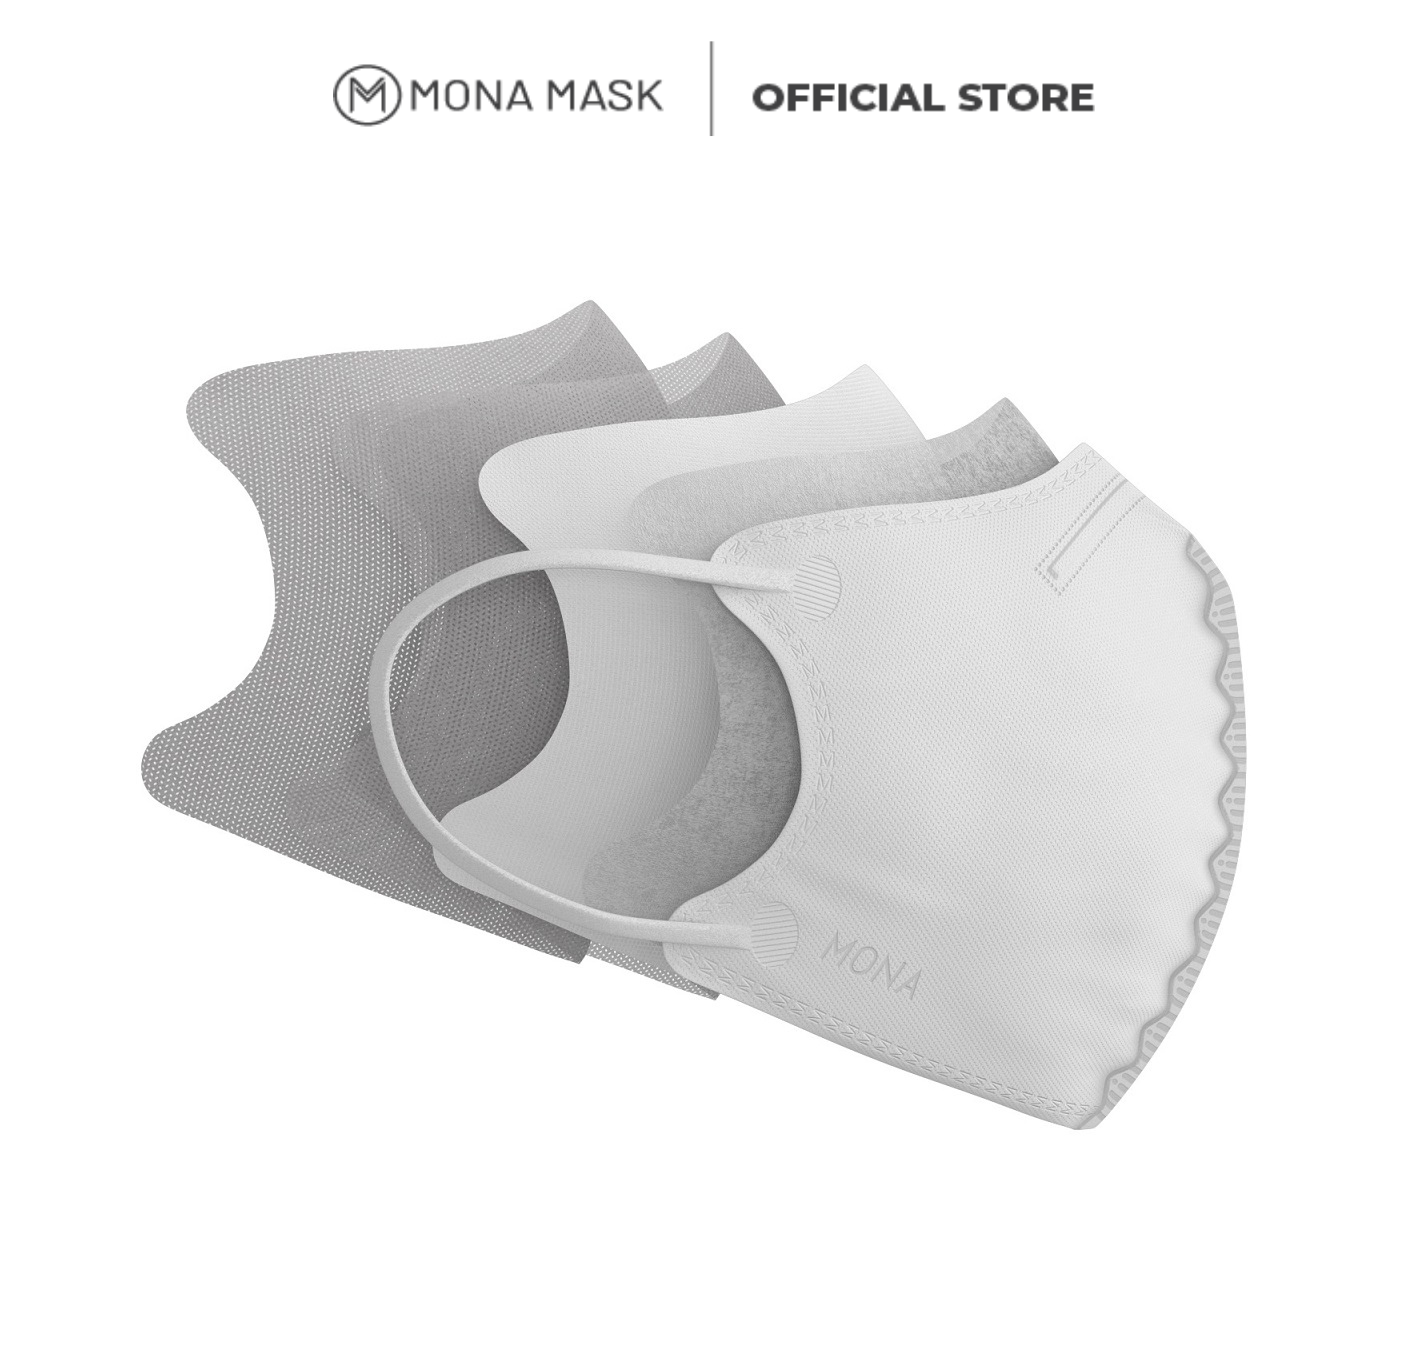 Combo 5 masks N95 Mona mask design 3D sunscreen UV filter 95% fine dust PM